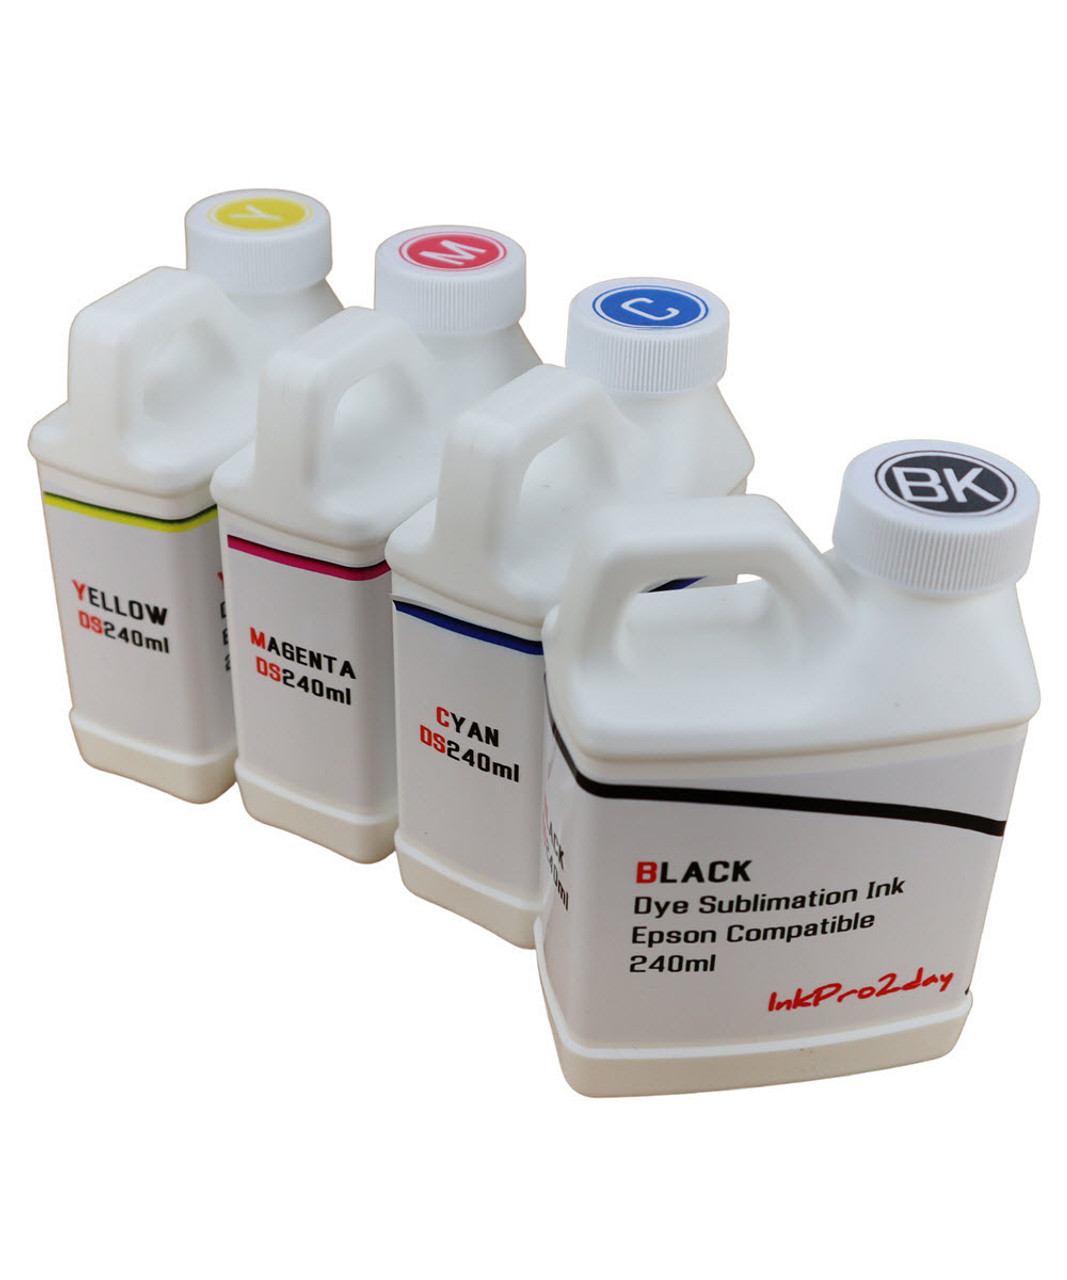 4- 240ml bottles Dye Sublimation Ink for Epson EcoTank ET-2840 Printer